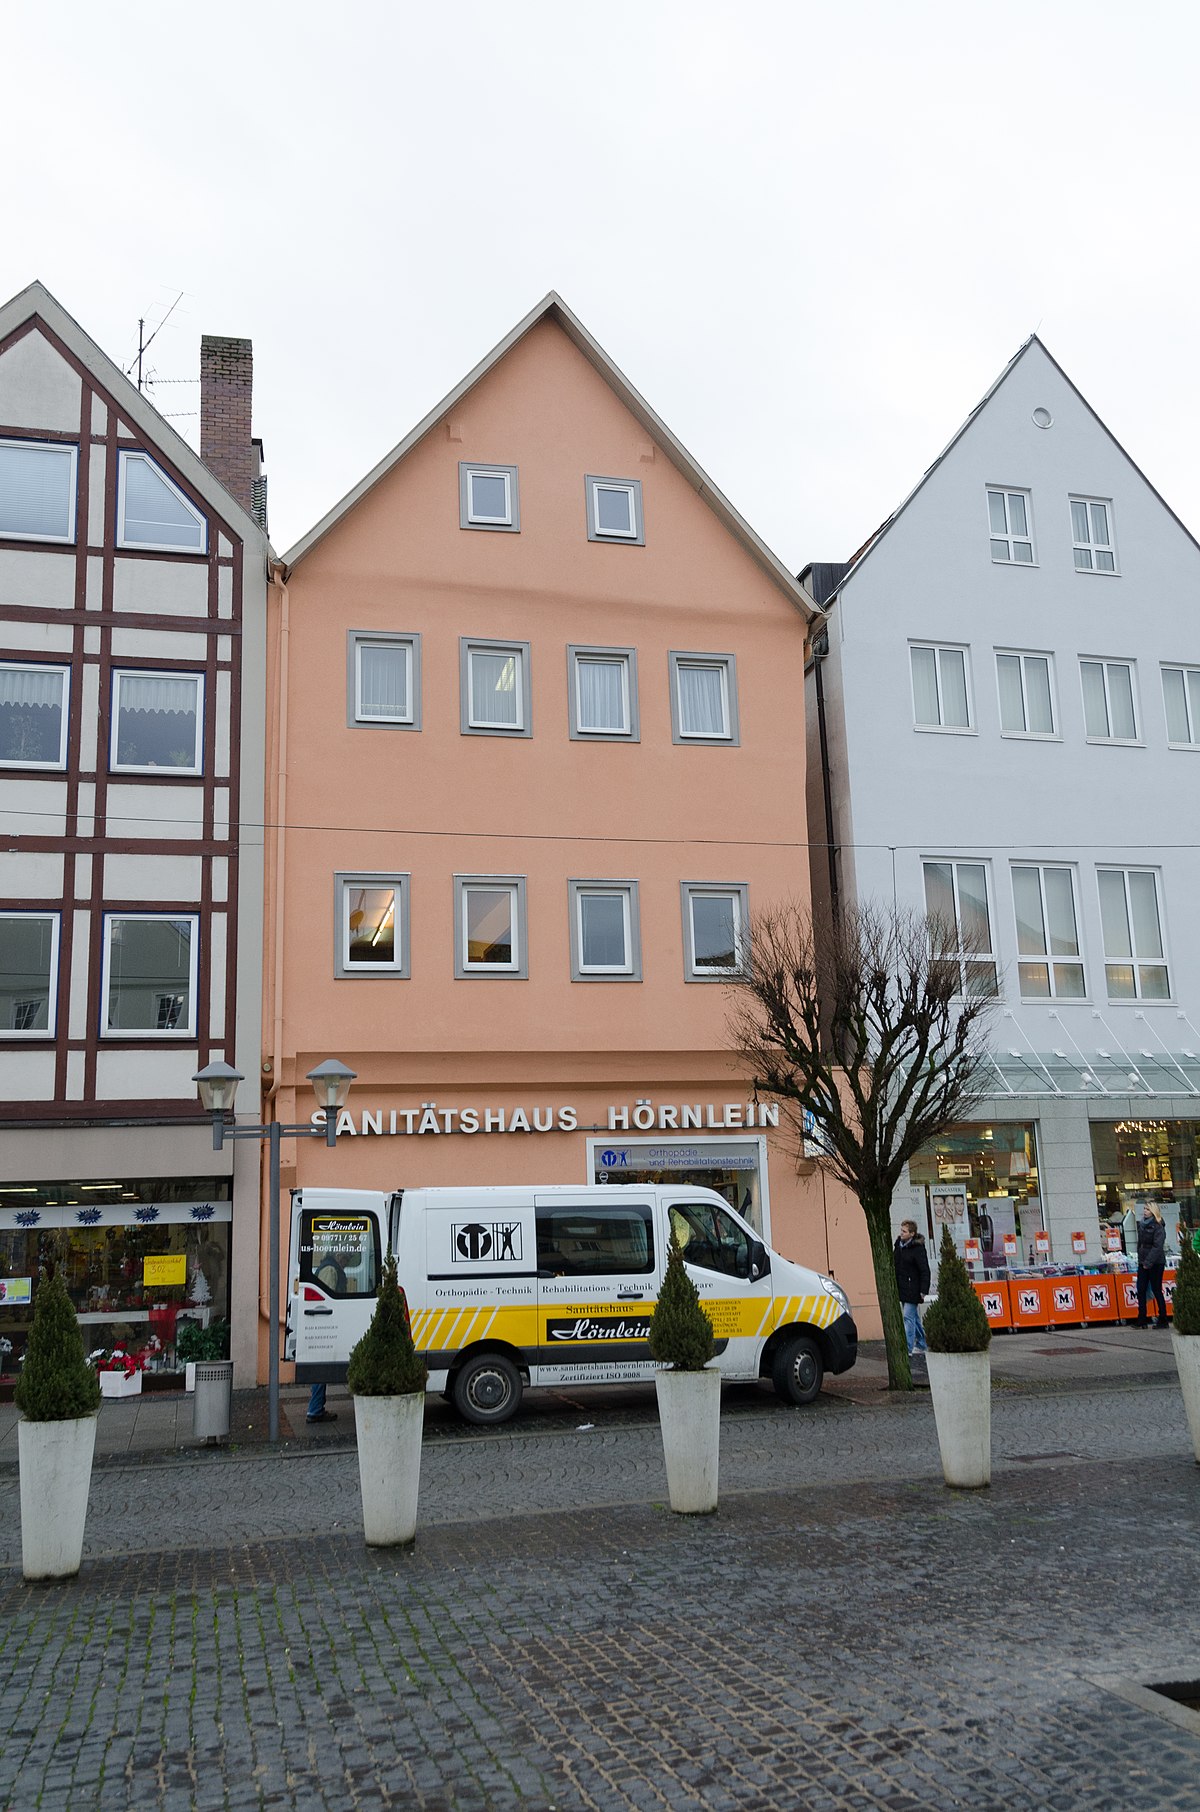  Find Hookers in Bad Neustadt an der Saale (DE)